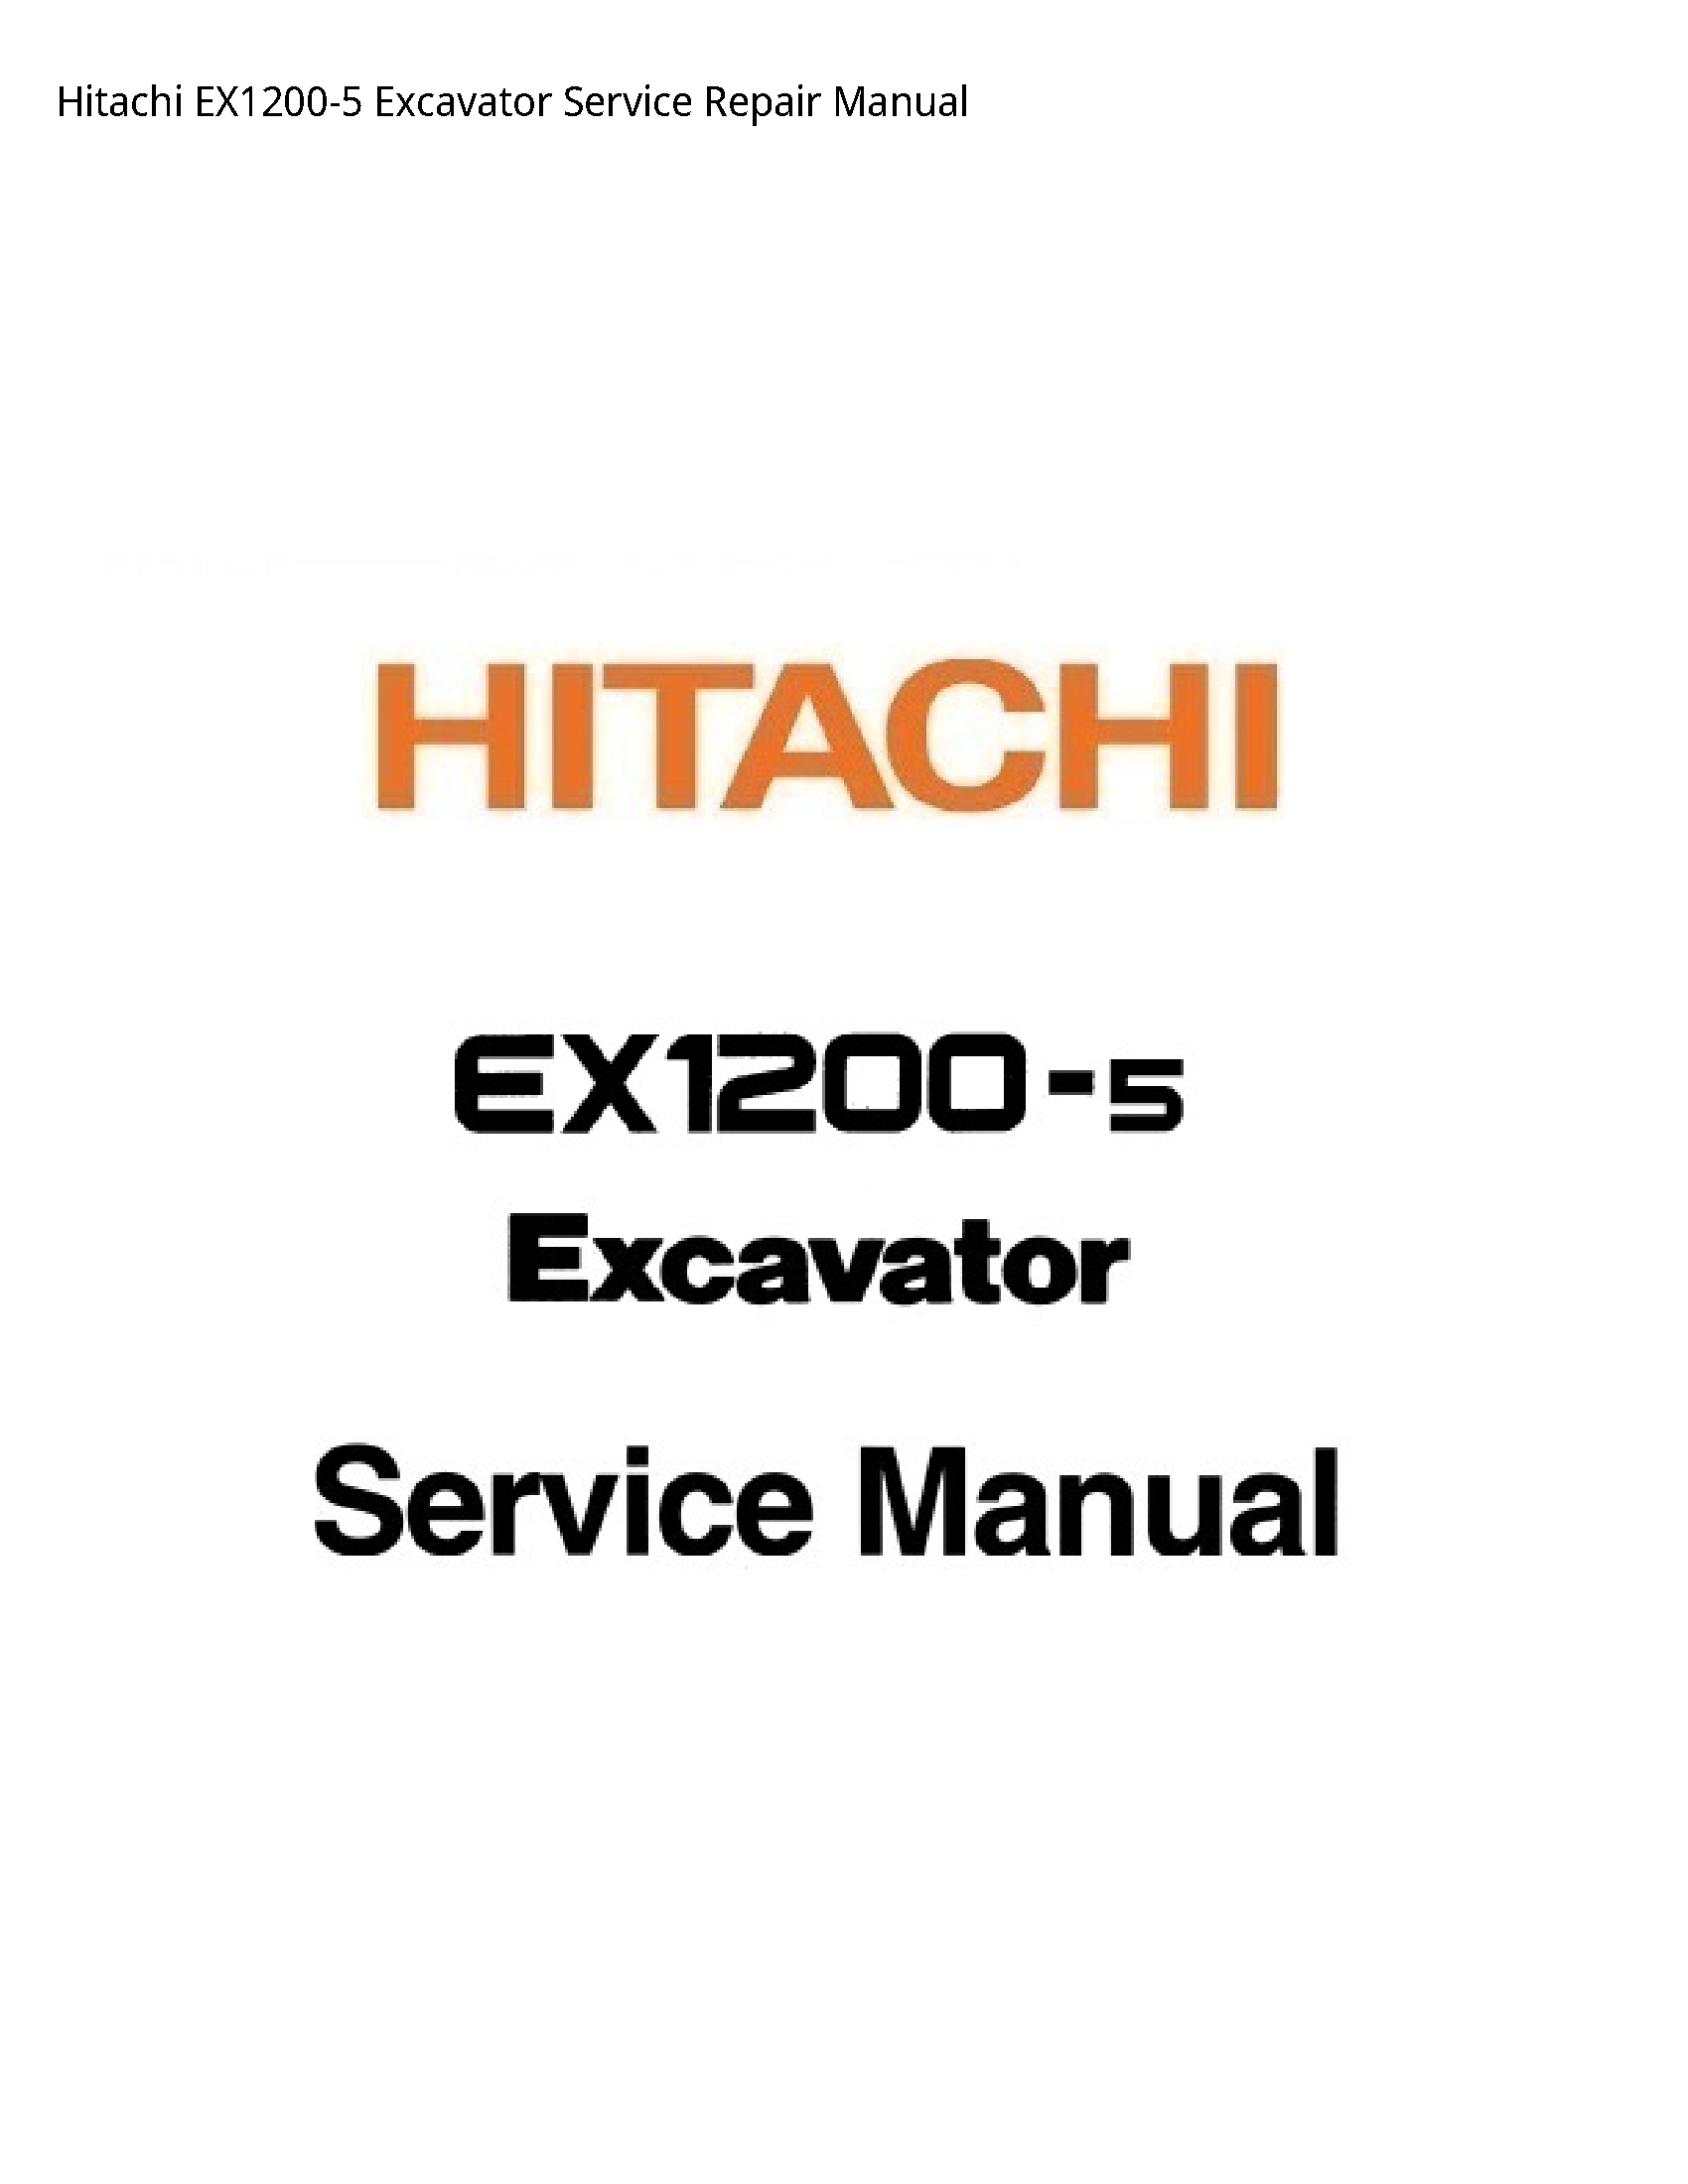 Hitachi EX1200-5 Excavator manual